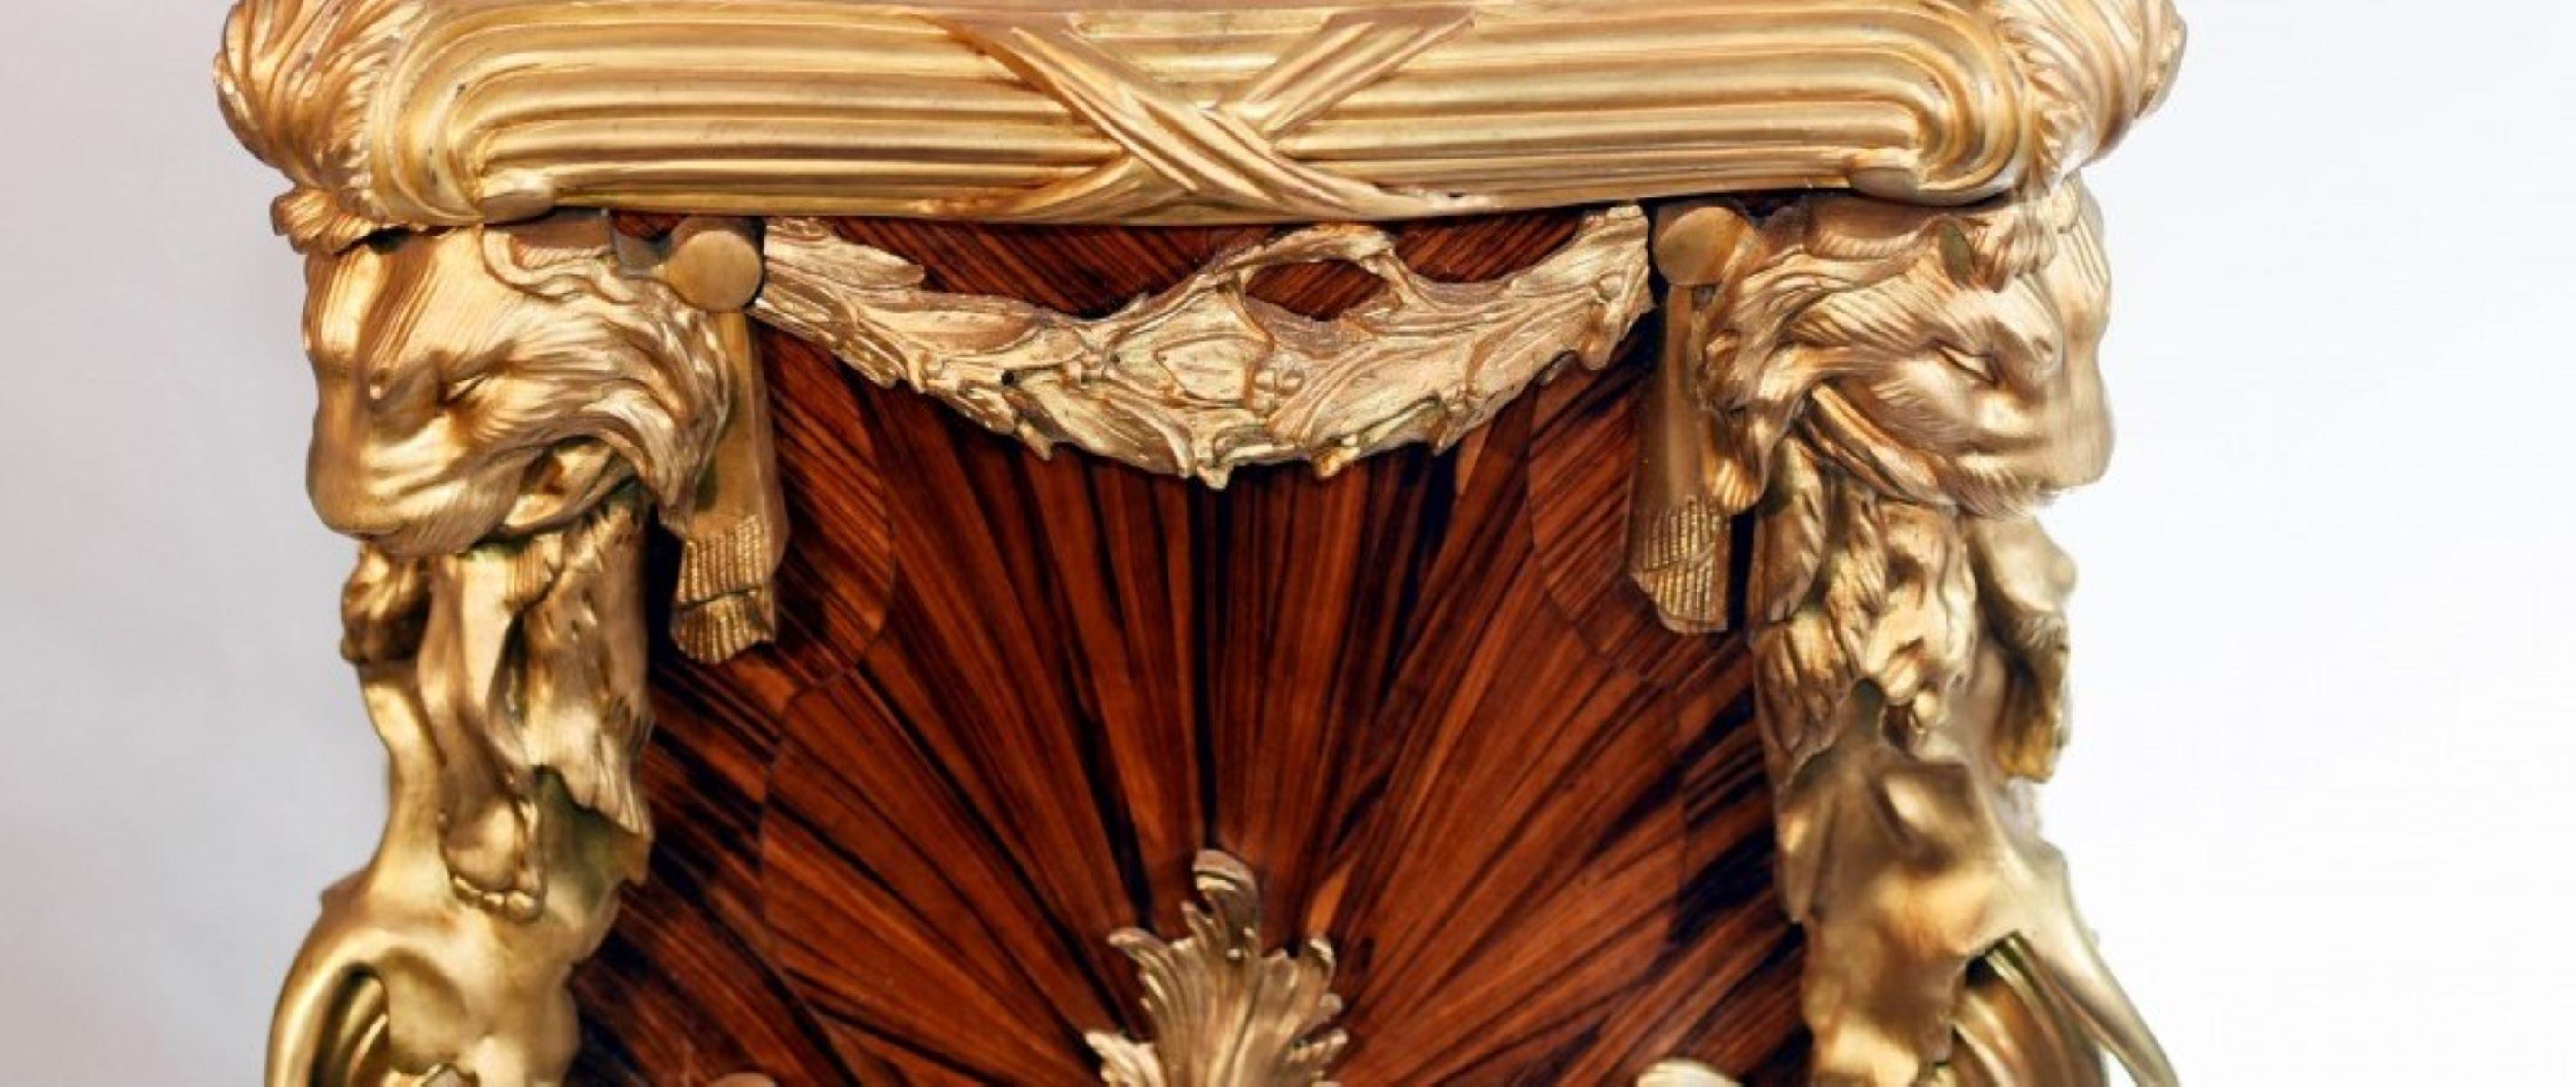 Fabuleuse paire de piédestaux en marqueterie de style Linke à plateau de marbre
François Linke (1855-1946) était un ébéniste réputé de la fin du 19e siècle.
Ces piédestaux sont fabriqués en bois de roi ou en bronze doré, avec des têtes de lion aux